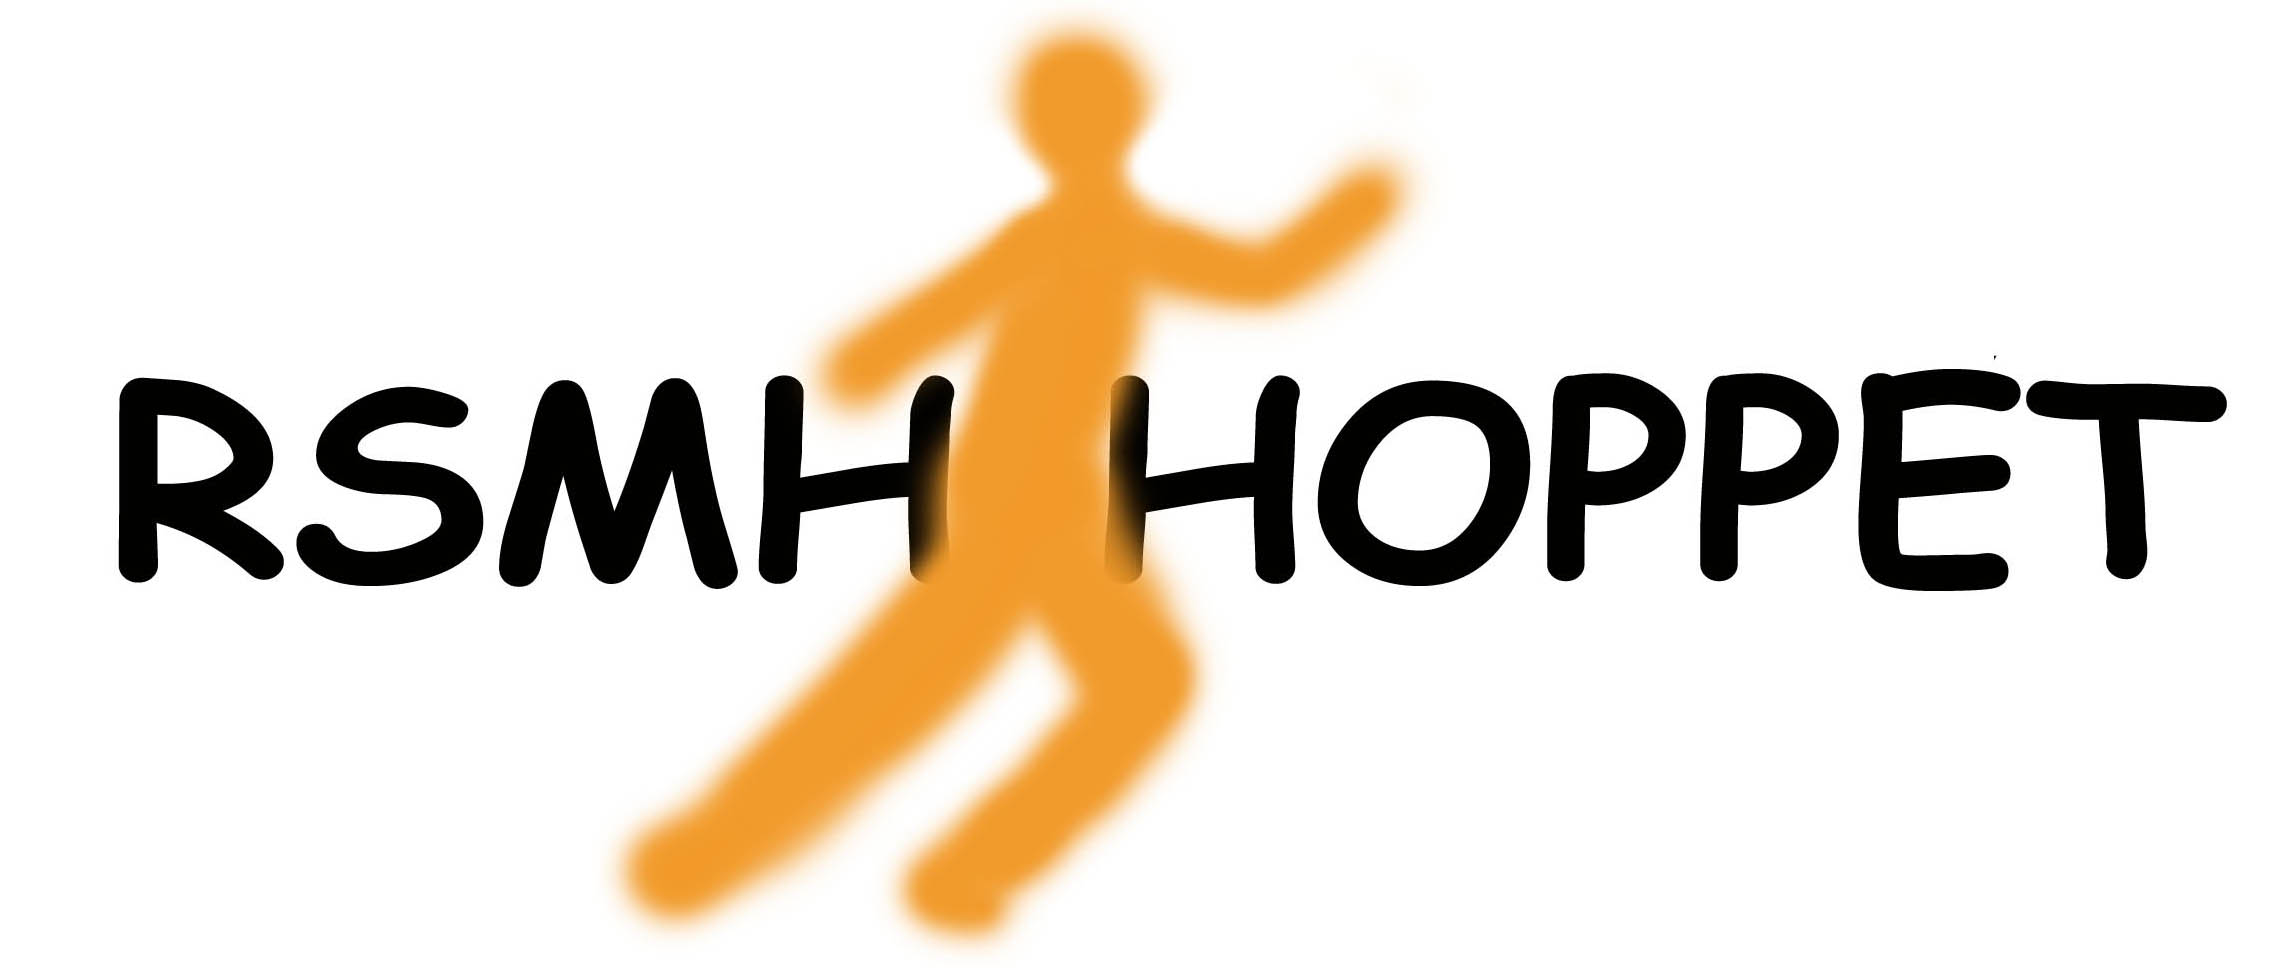 RSMH-Hoppet logga